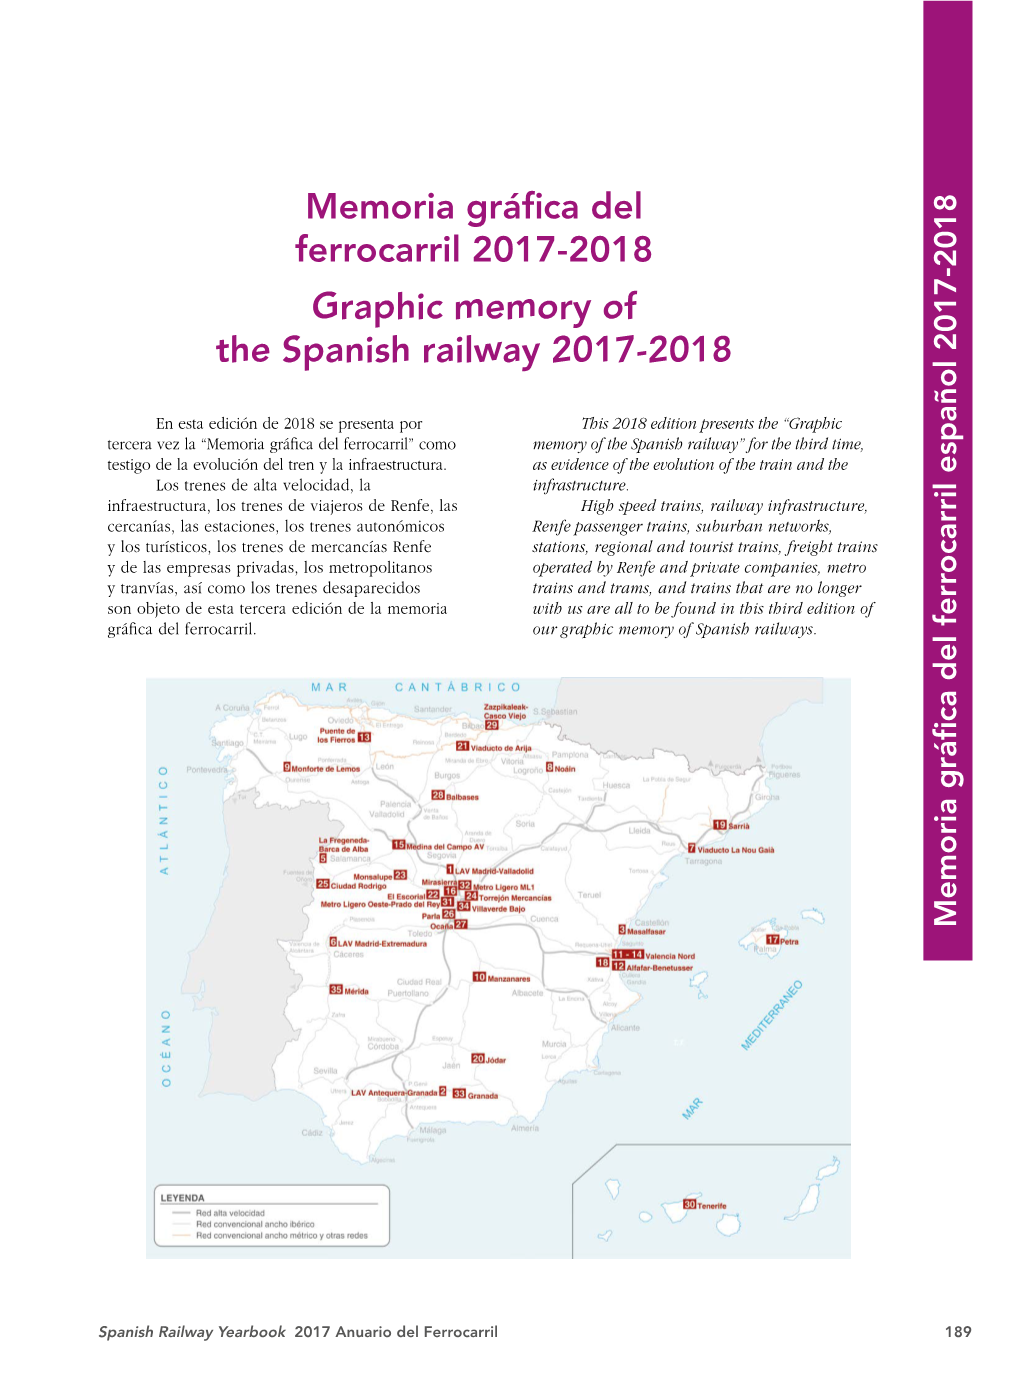 Memoria Gráfica Del Ferrocarril 2017-2018 Graphic Memory of The